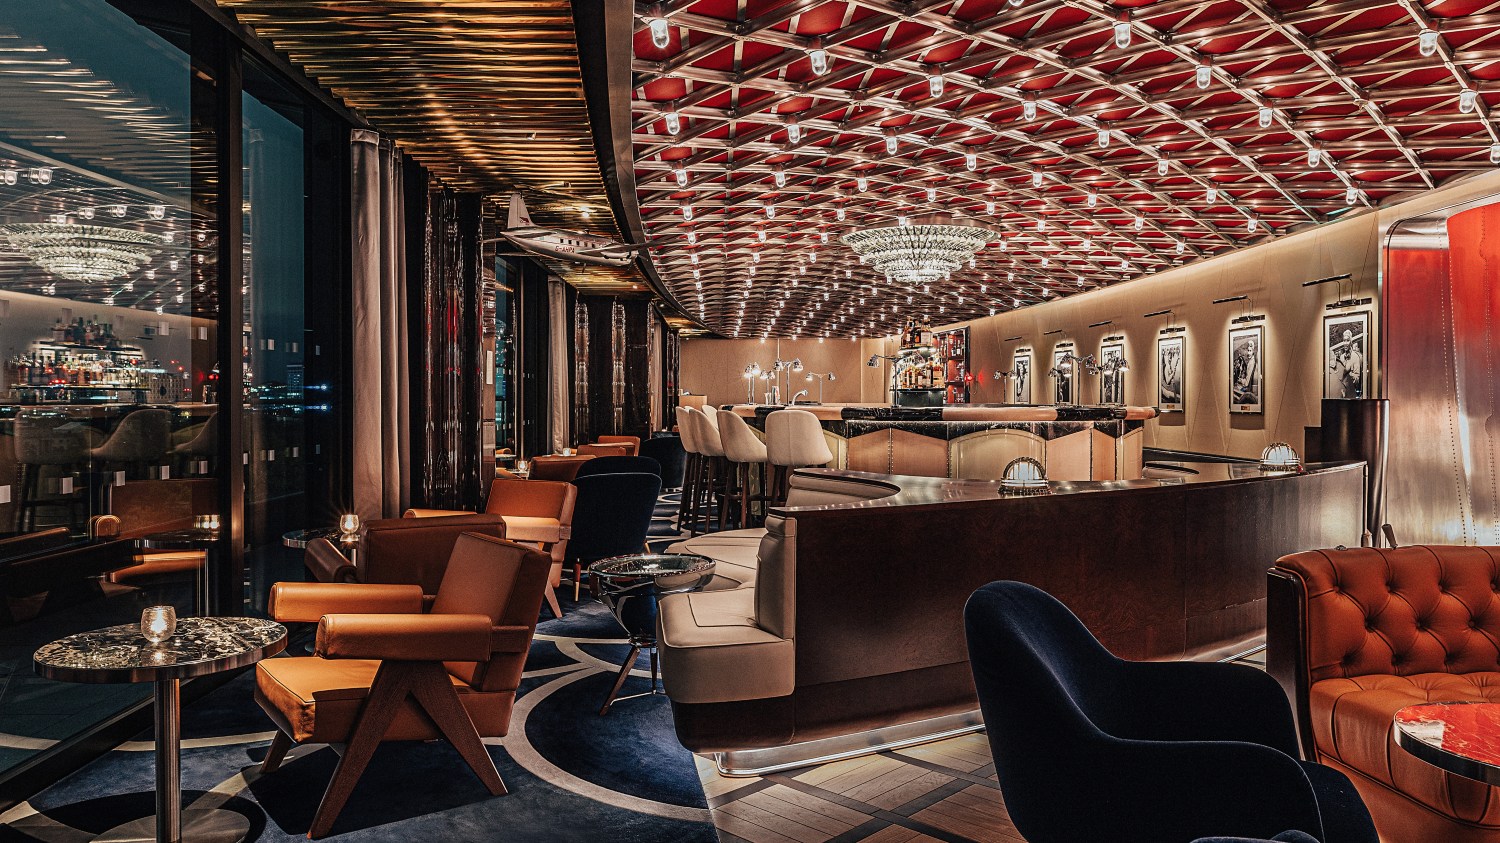 The Glamorous Hotel Restaurant Designed for Petrolheads